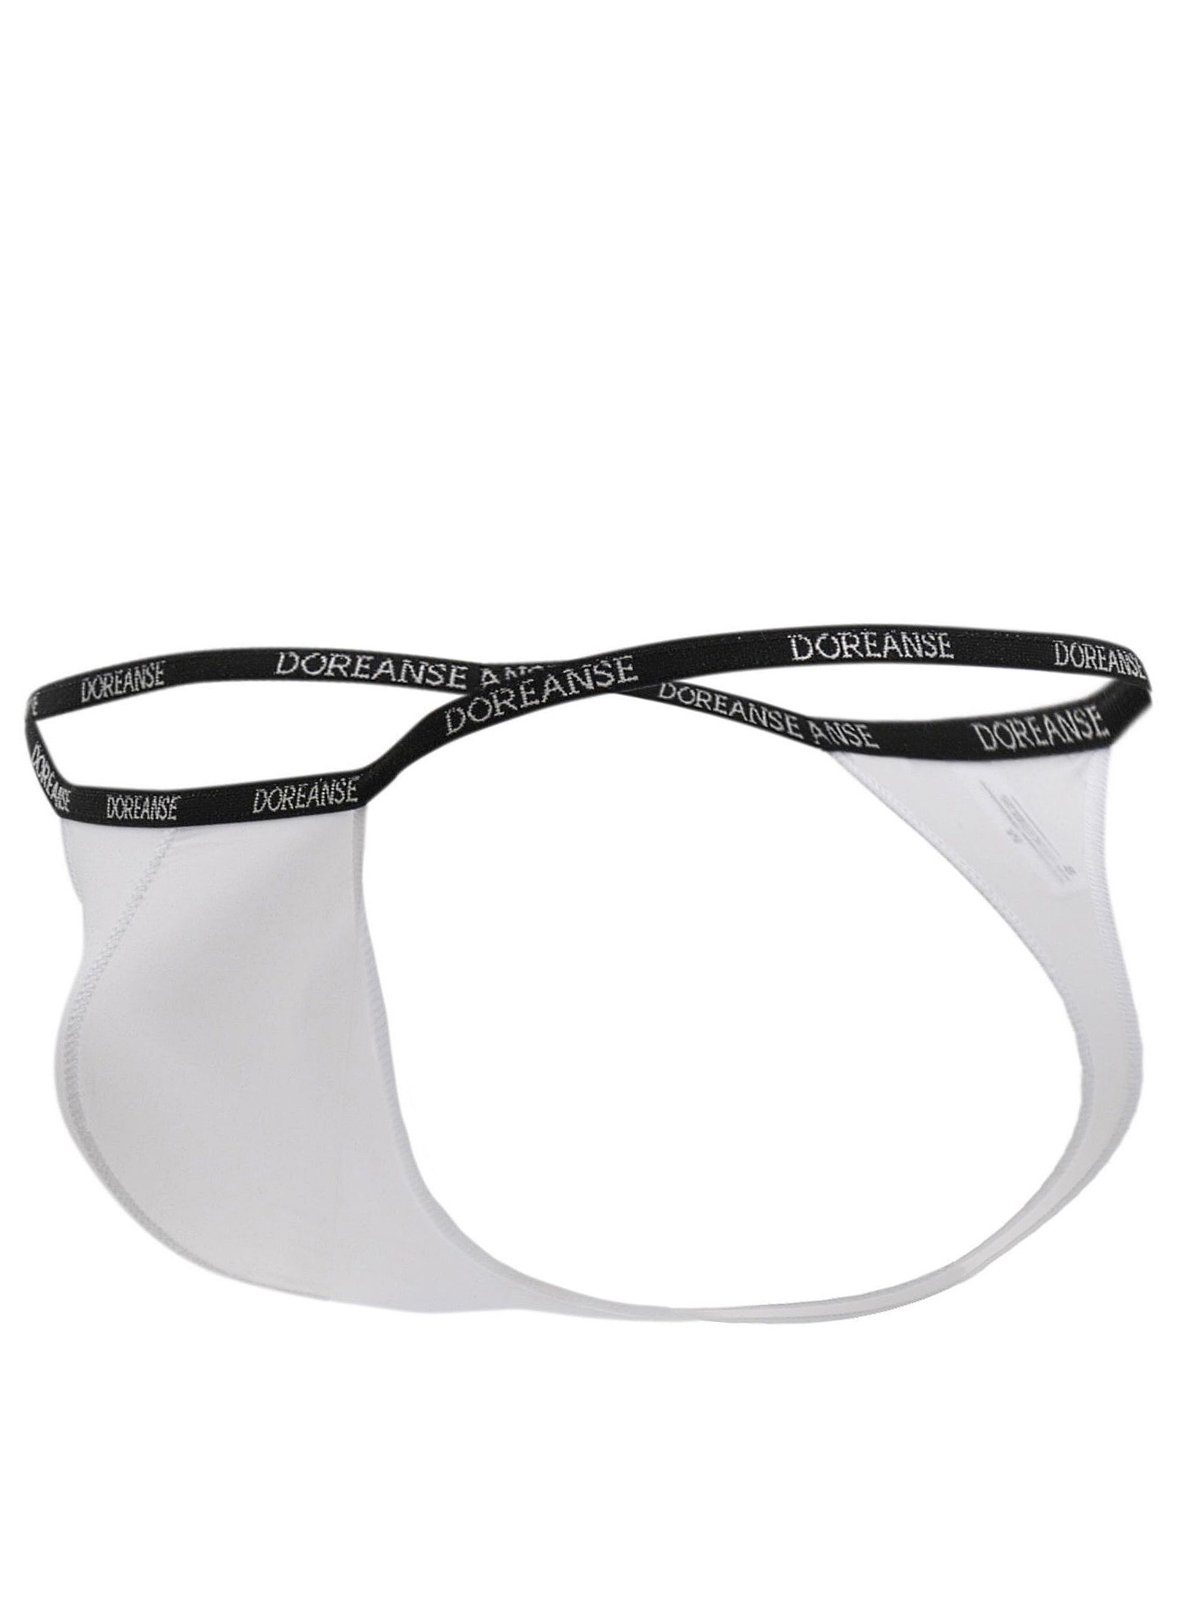 Qualitäts-Micro Weiß Stringtanga DA1390 G-String hauchdünnem Underwear Herren Doreanse aus